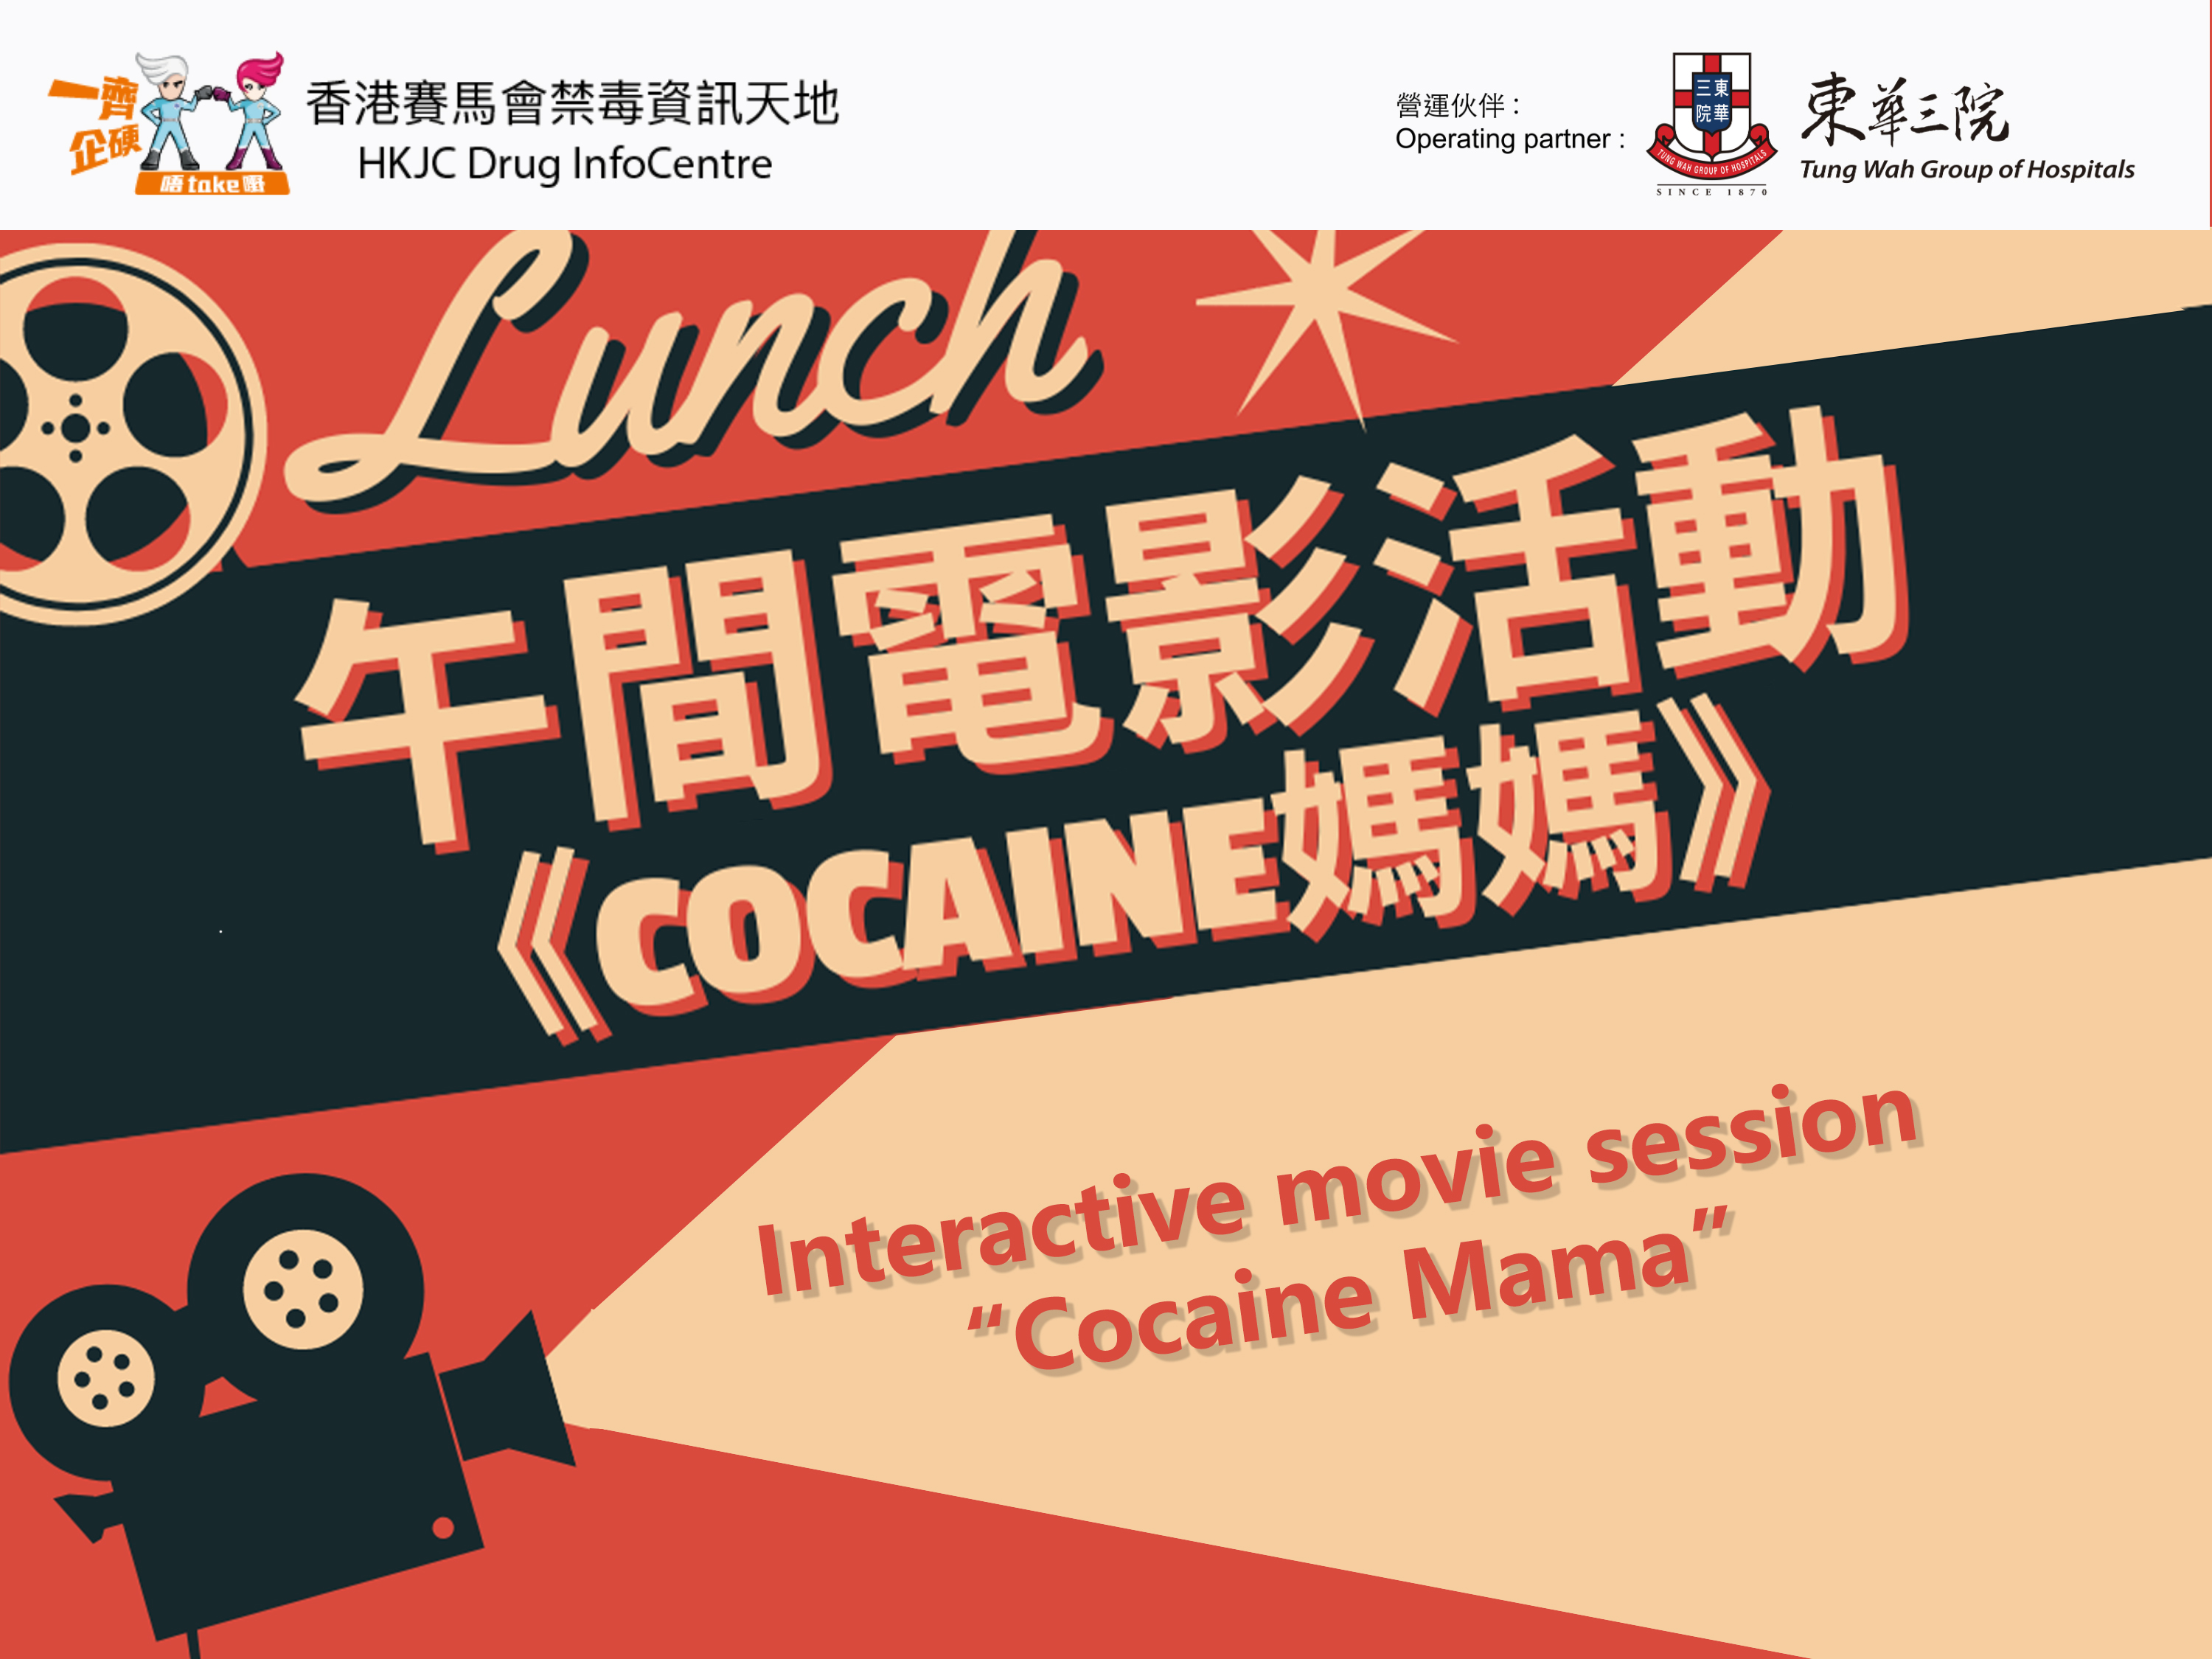 午间电影活动 —《Cocaine妈妈》